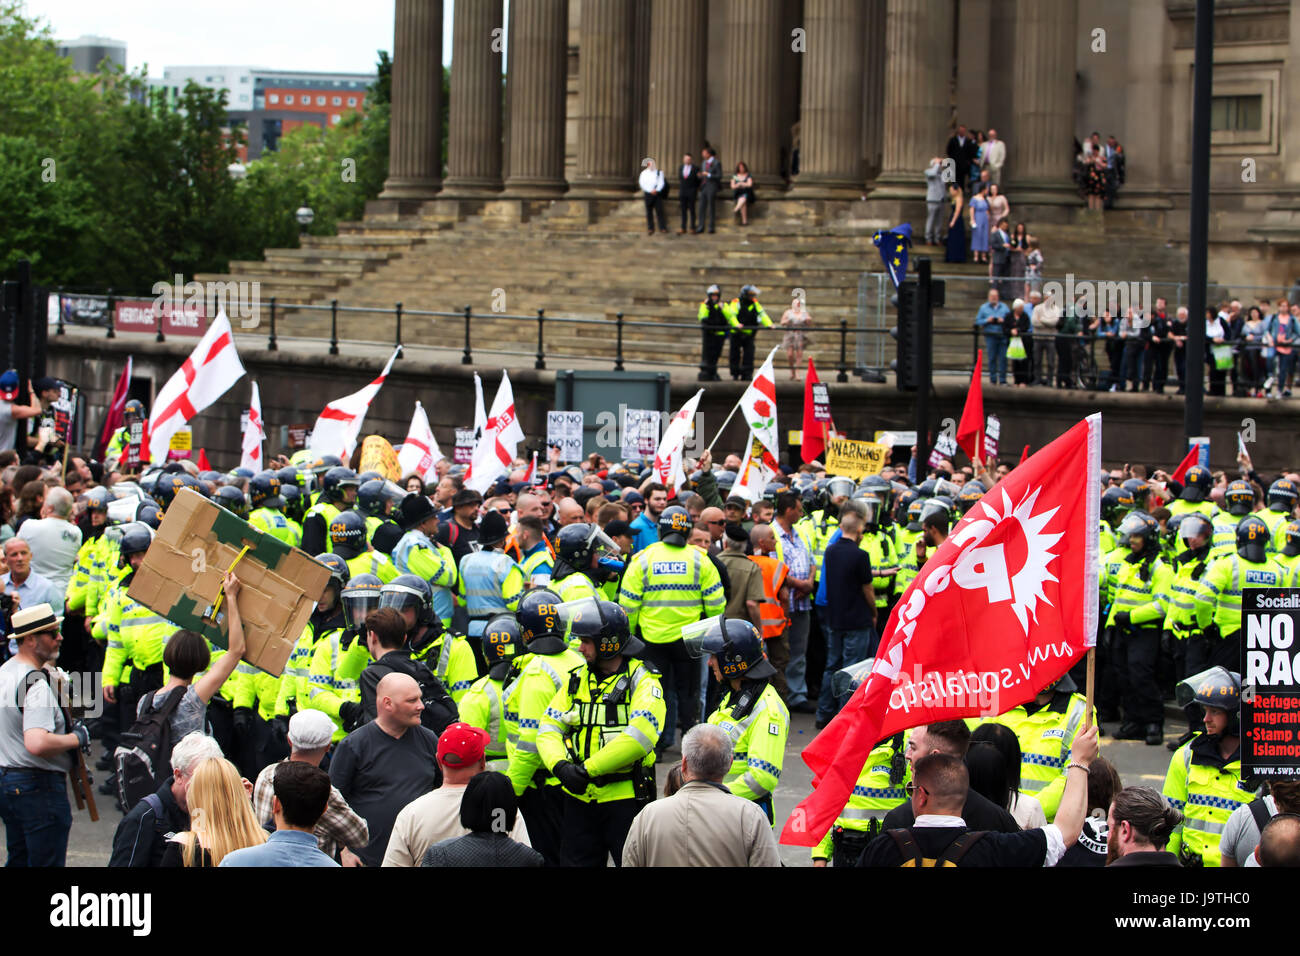 Liverpool Regno Unito, 3 giugno 2017. L'EDL sostenitori e anti- sostenitori fascista si scontrano in Liverpool Merseyside Regno Unito. Credito: Ken Biggs/Alamy Live News. Foto Stock